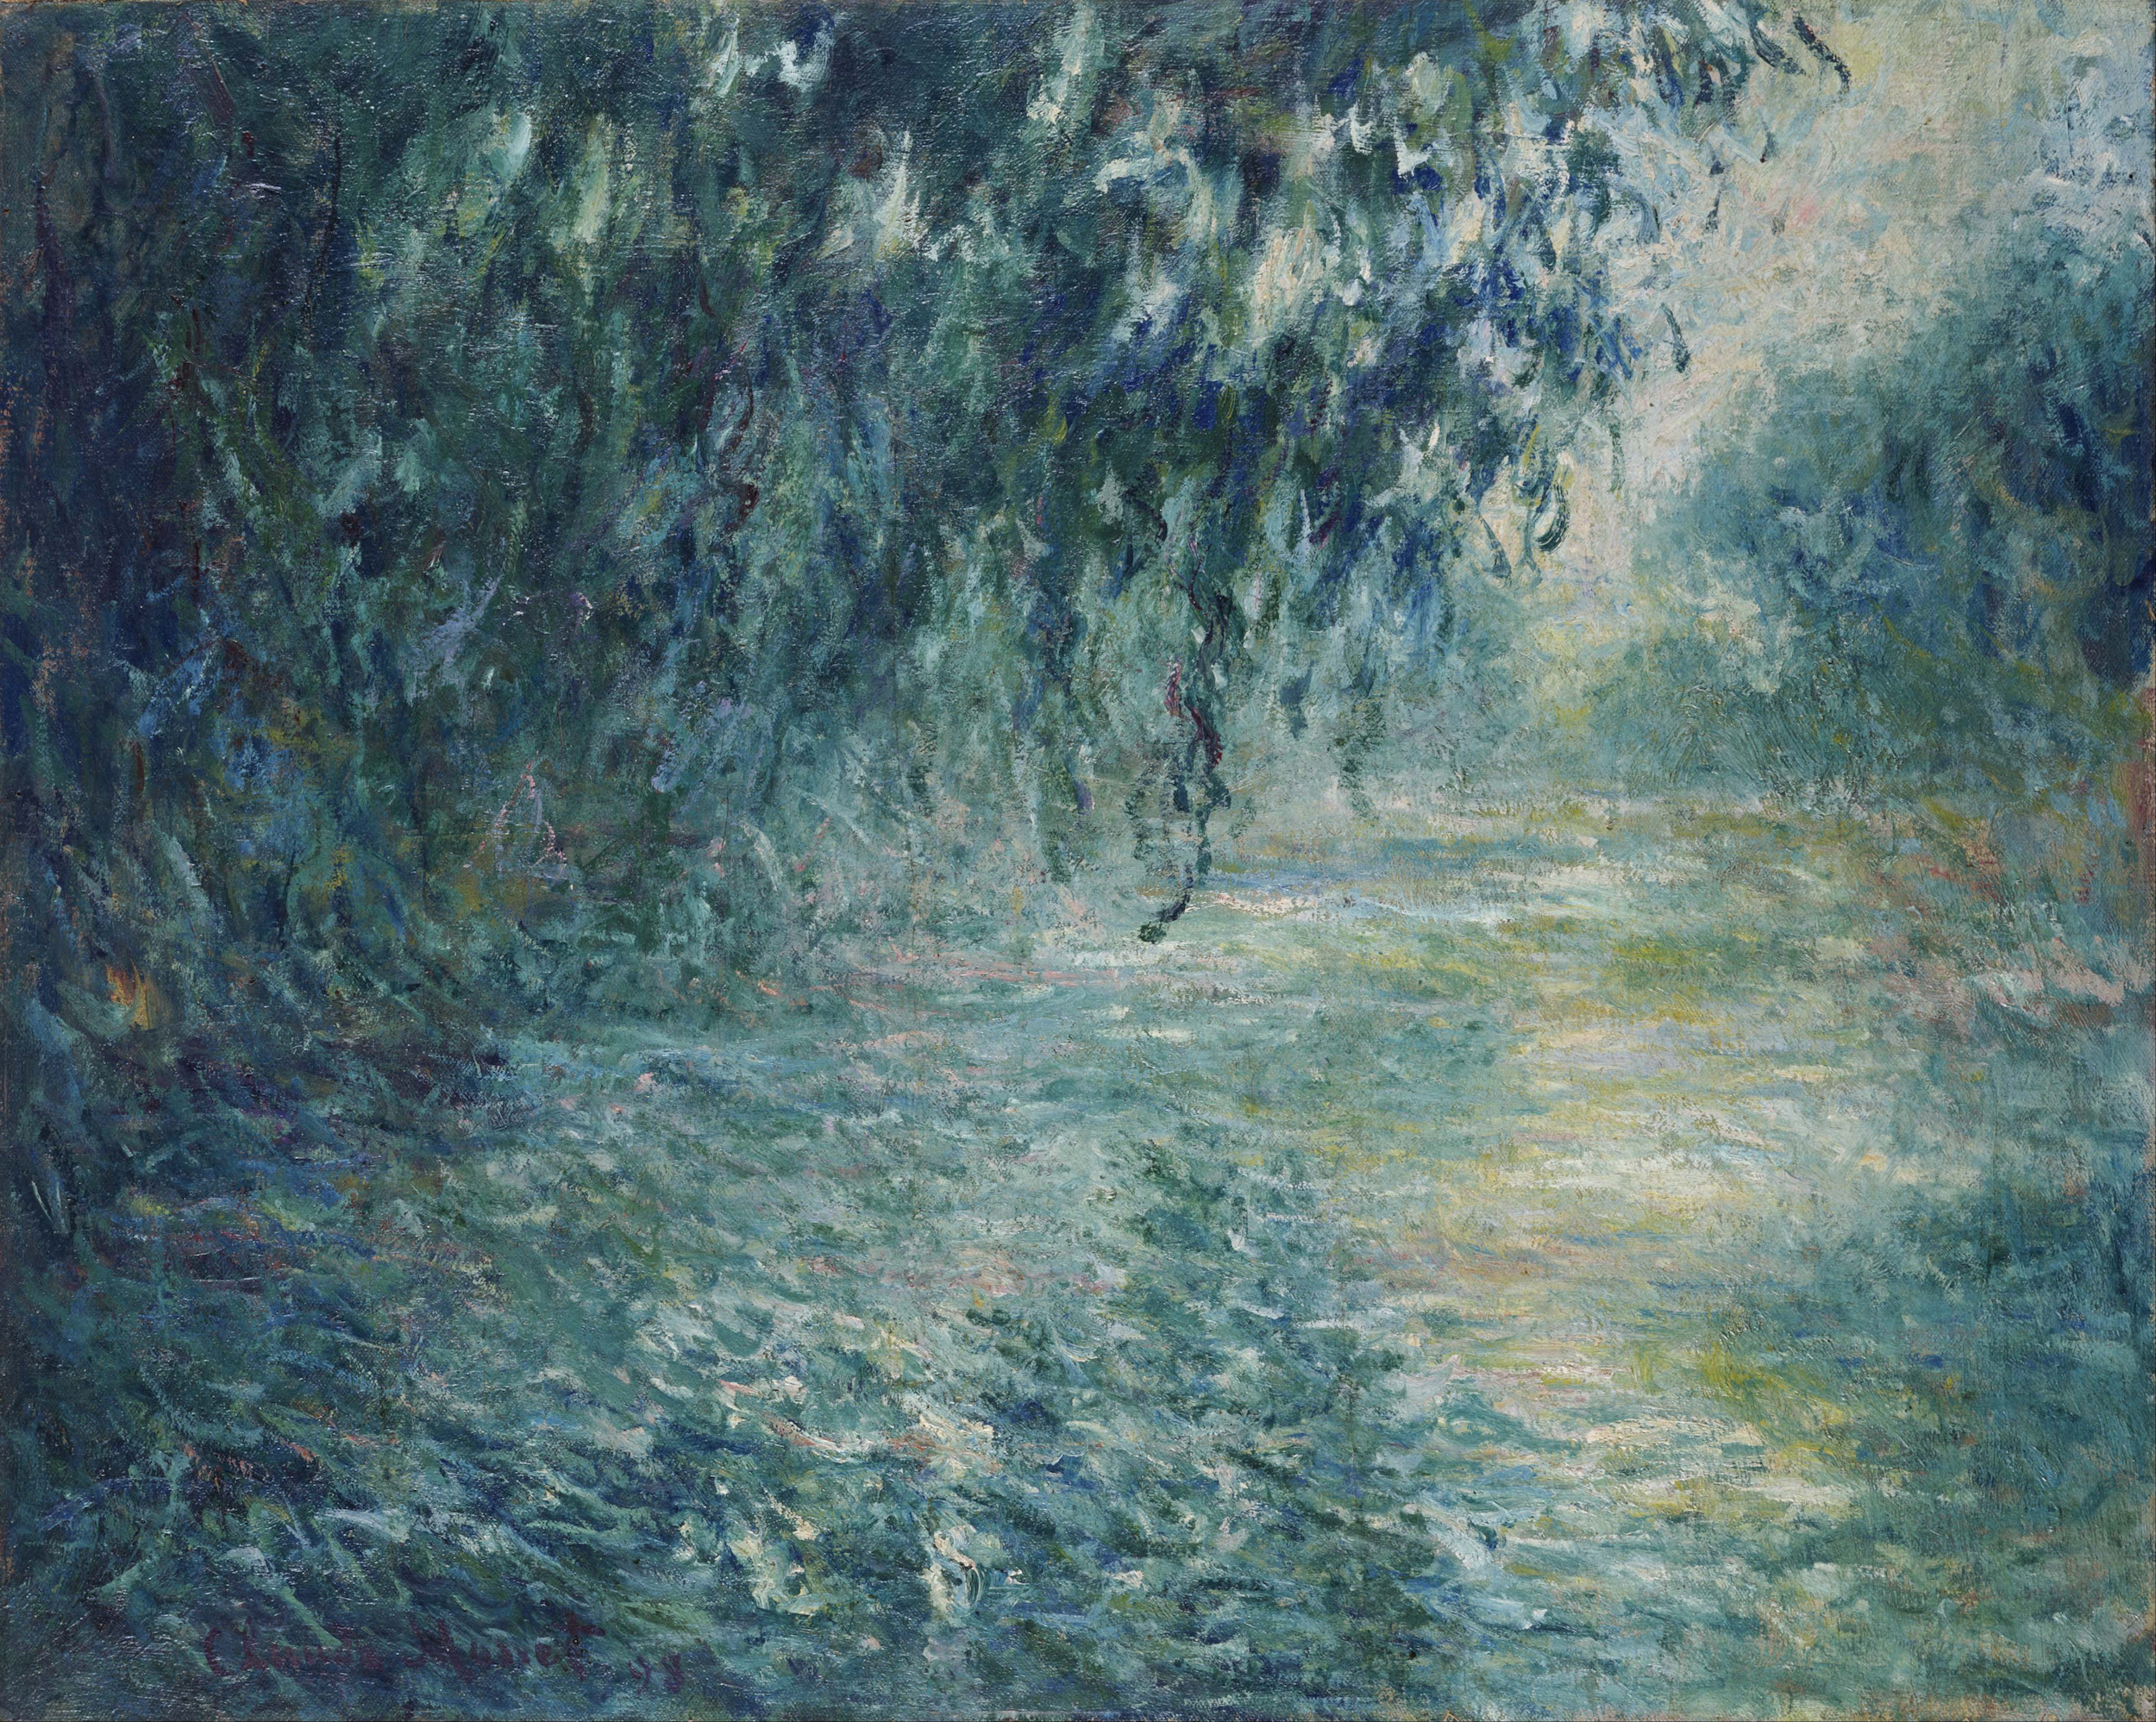 Morgen auf der Seine by Claude Monet - 1898 - 91.5 x 73 cm Das Nationalmuseum für westliche Kunst